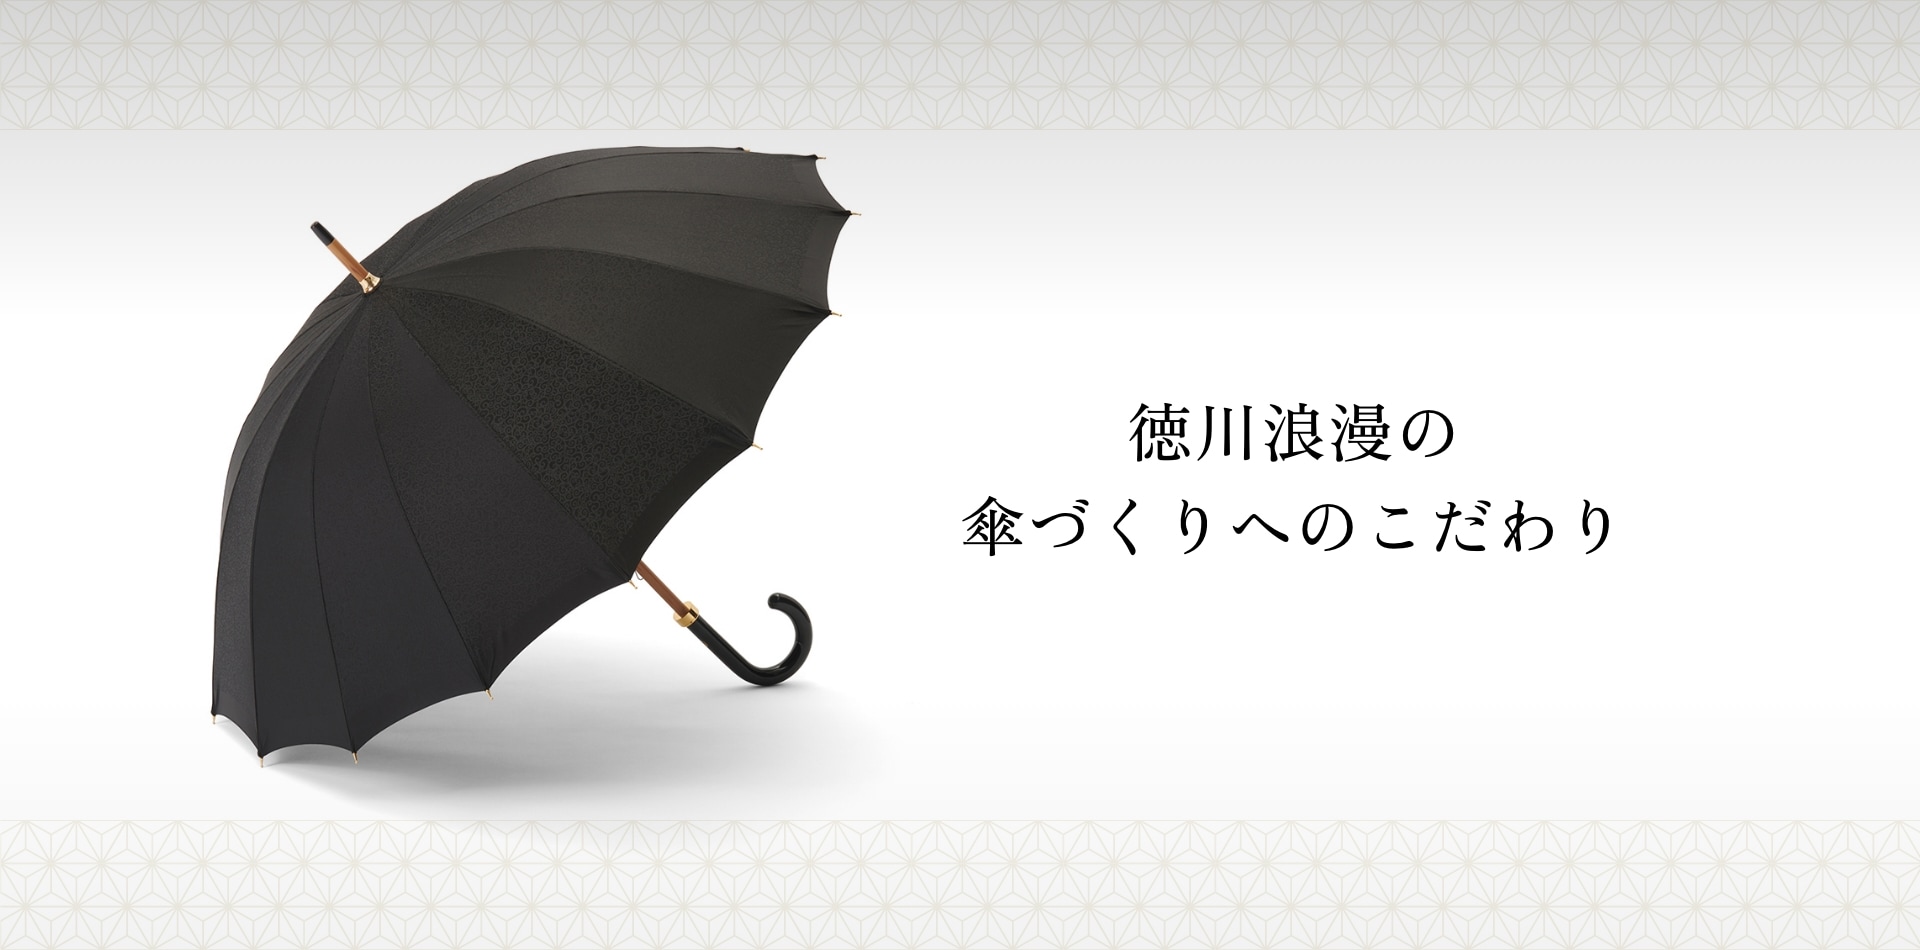 徳川浪漫の傘づくりへのこだわり